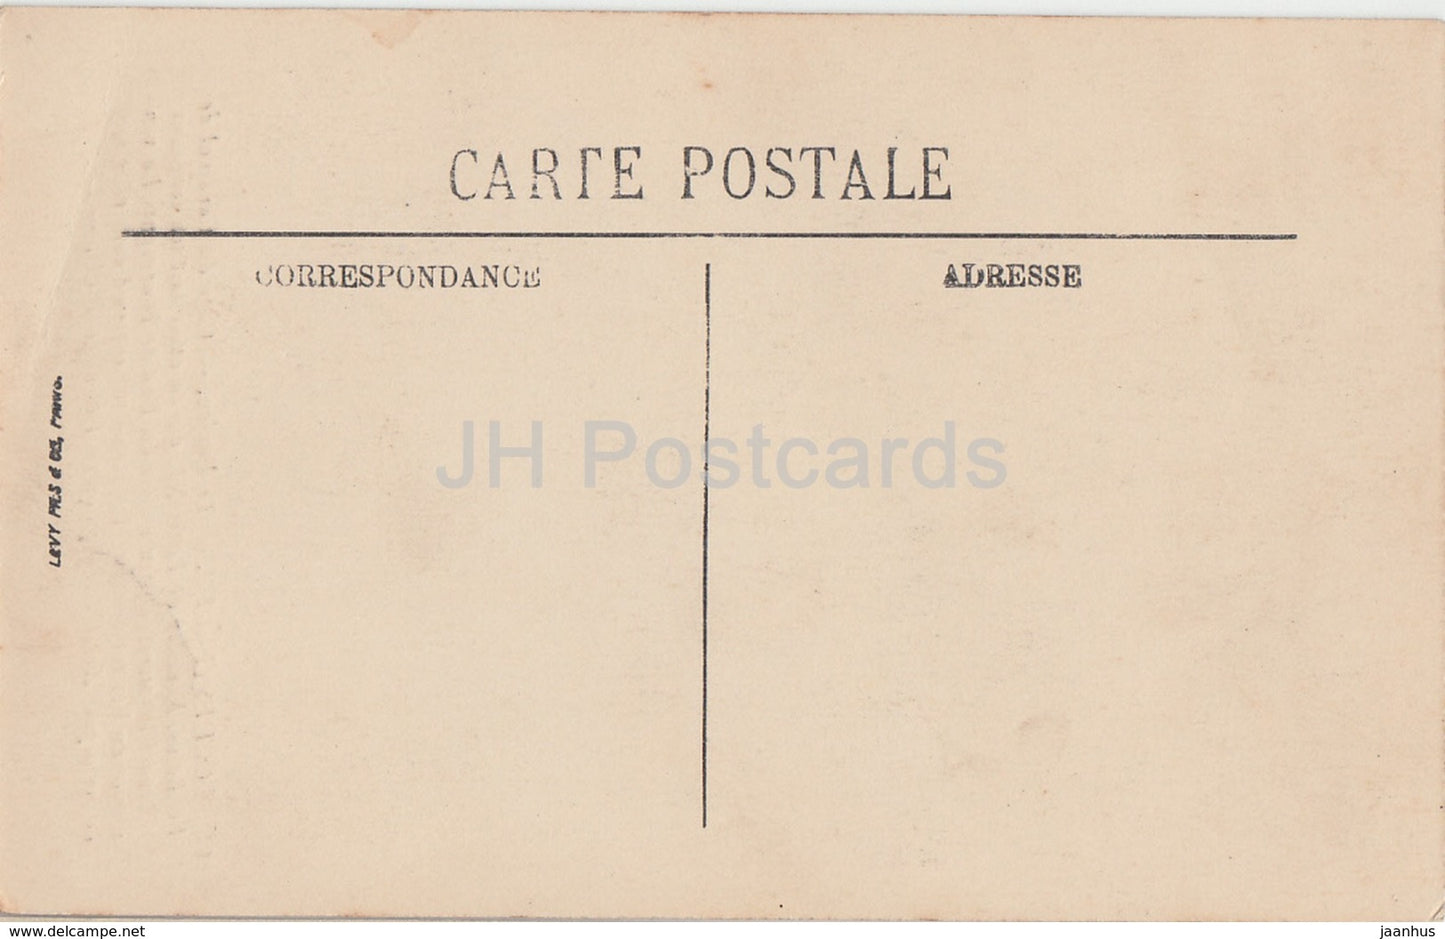 Loches - Le Donjon - cage du cardinal de La Balue - castle - 109 - old postcard - France - unused